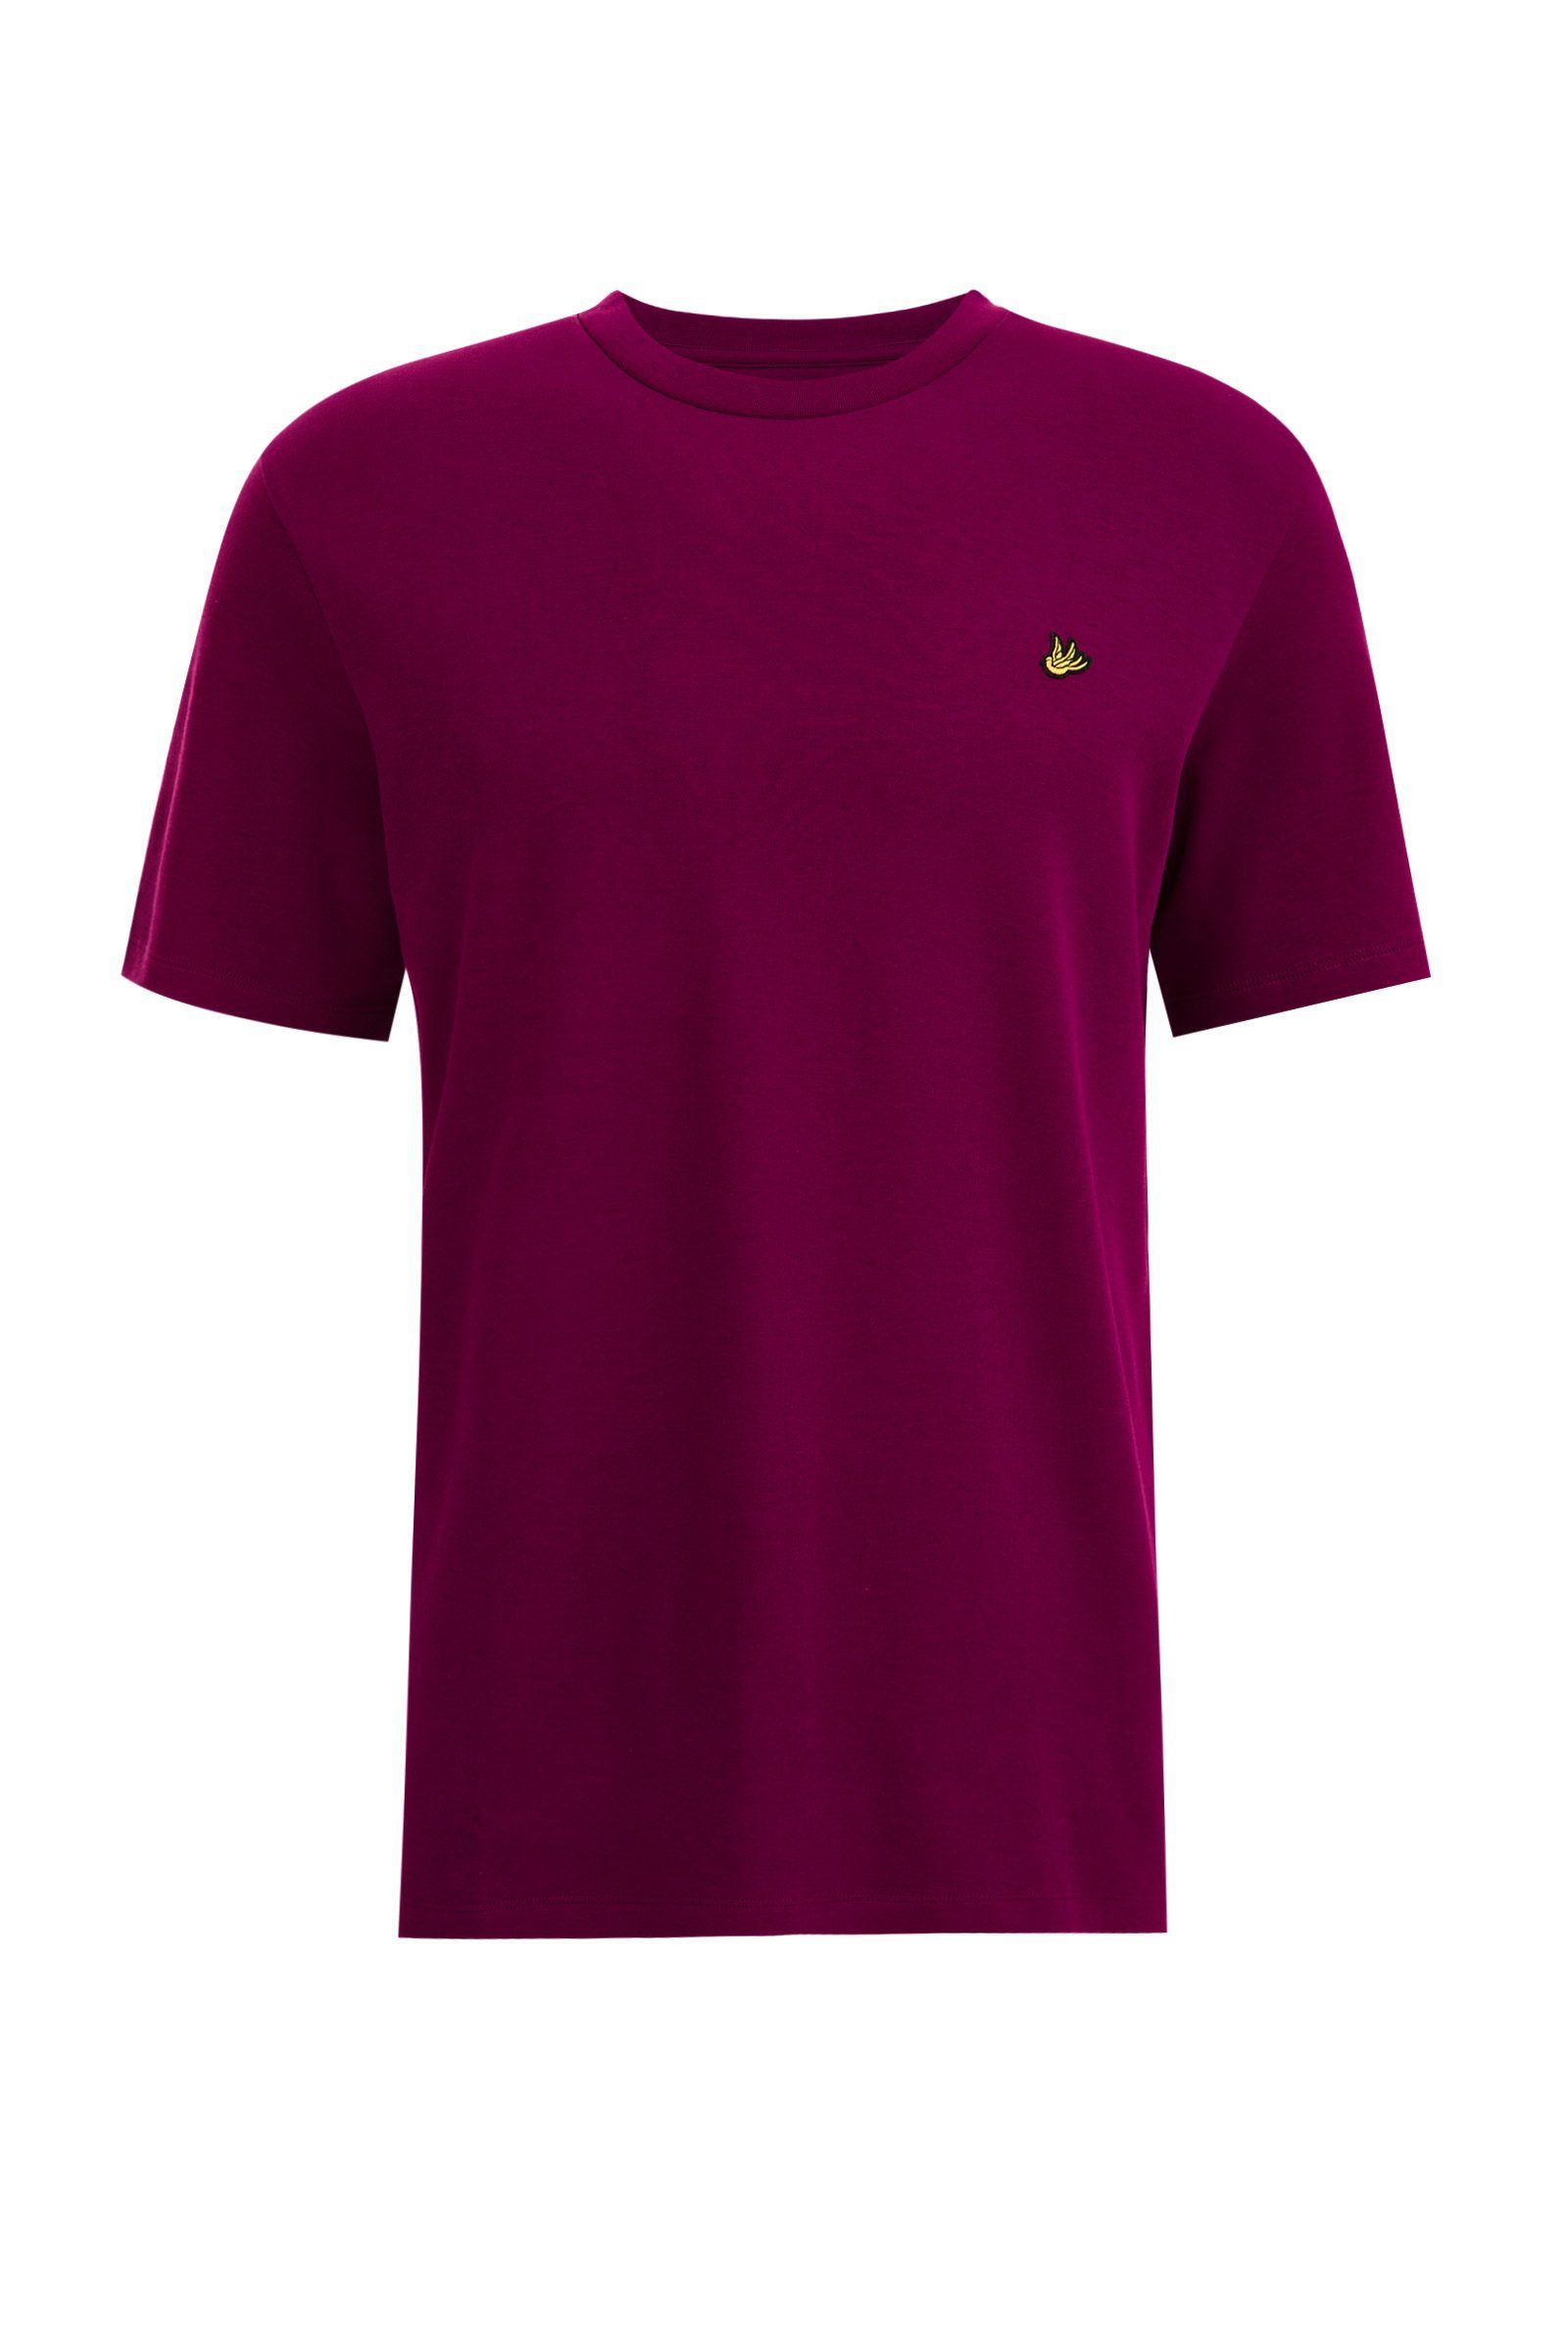 WE T-Shirt Fuchsia Fashion (1-tlg)